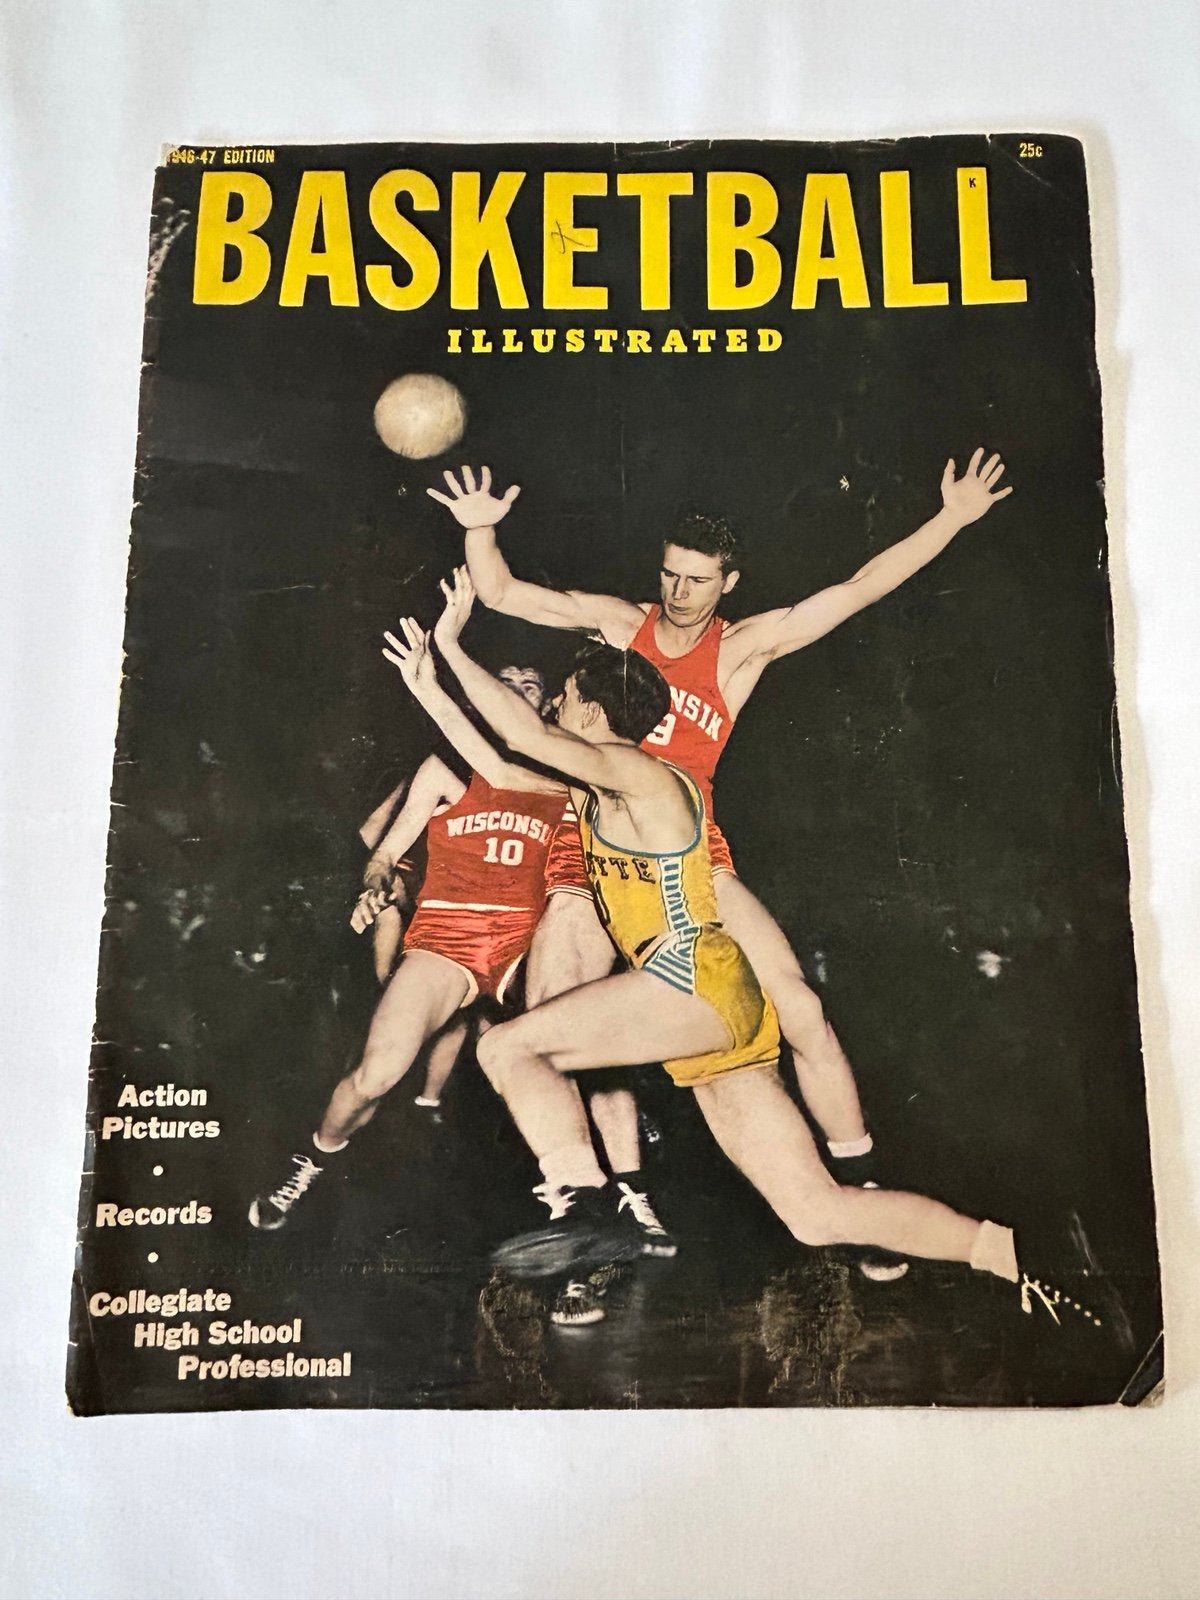 Basketball Illustrated 1947 edition FAU7eG93W